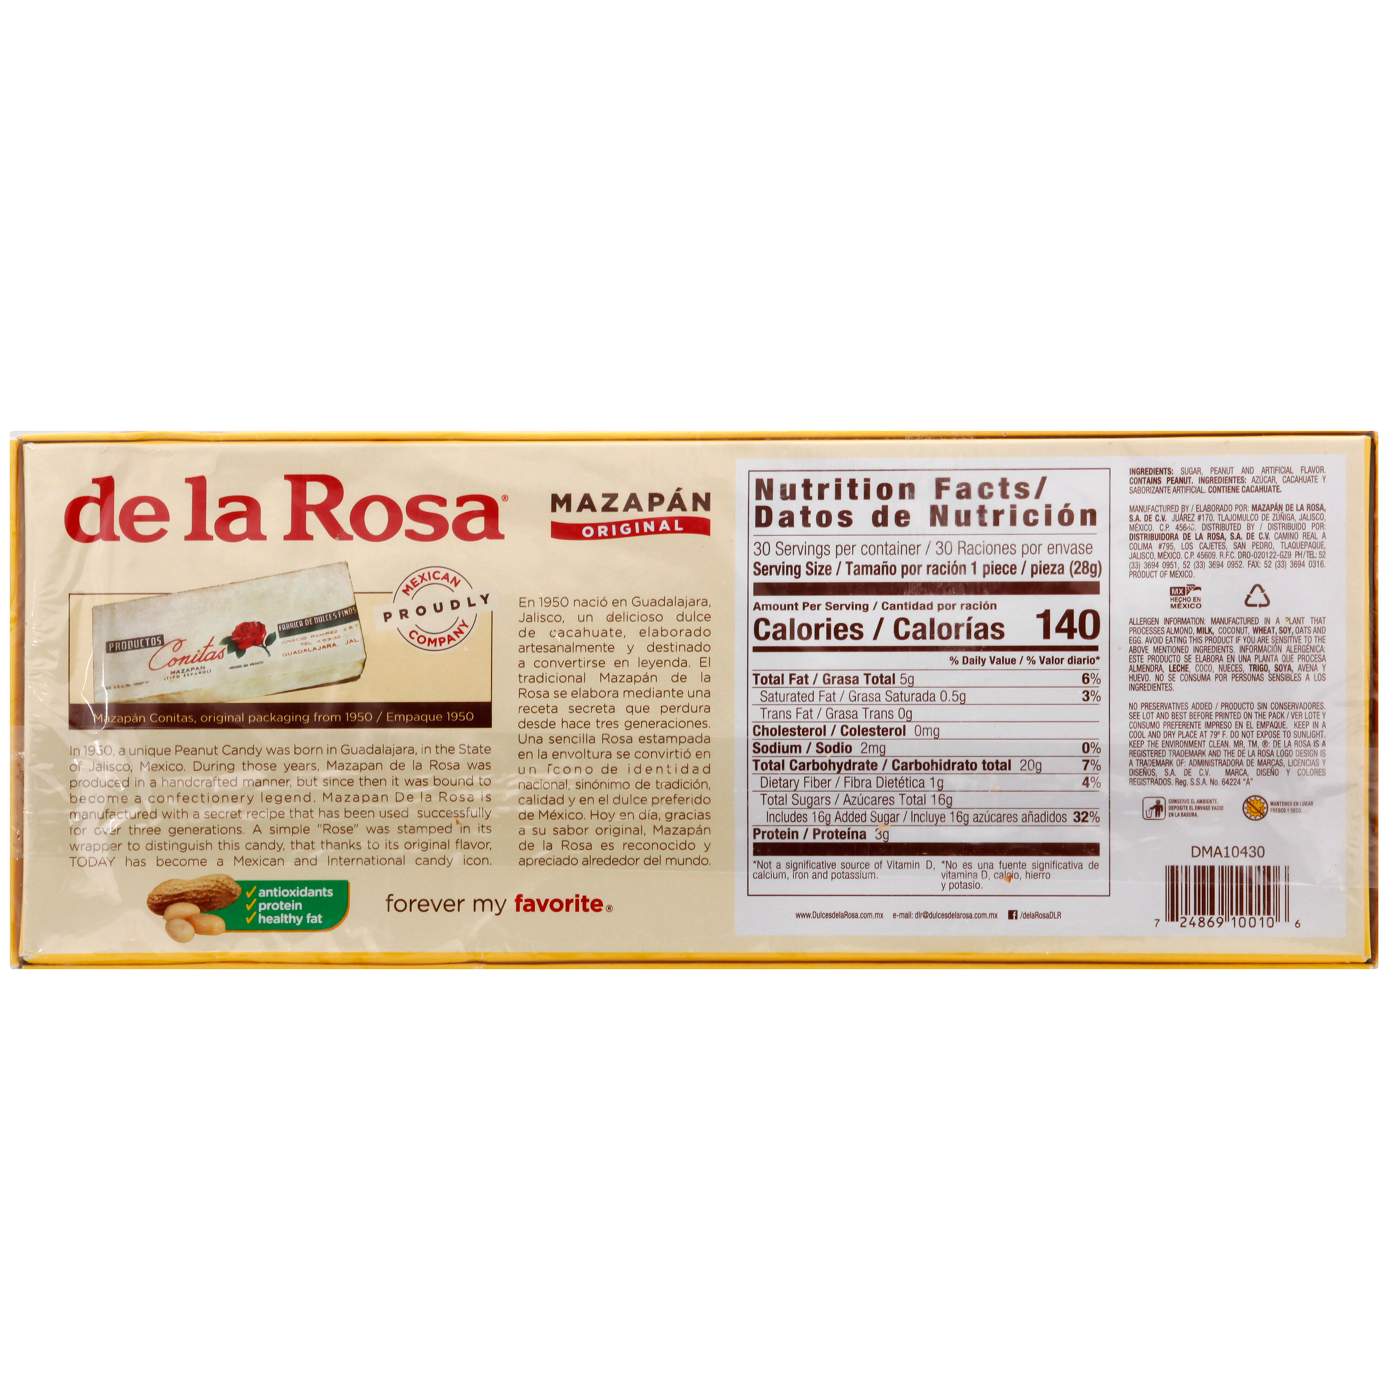 De La Rosa Mazapan Original Peanut Candy; image 2 of 2